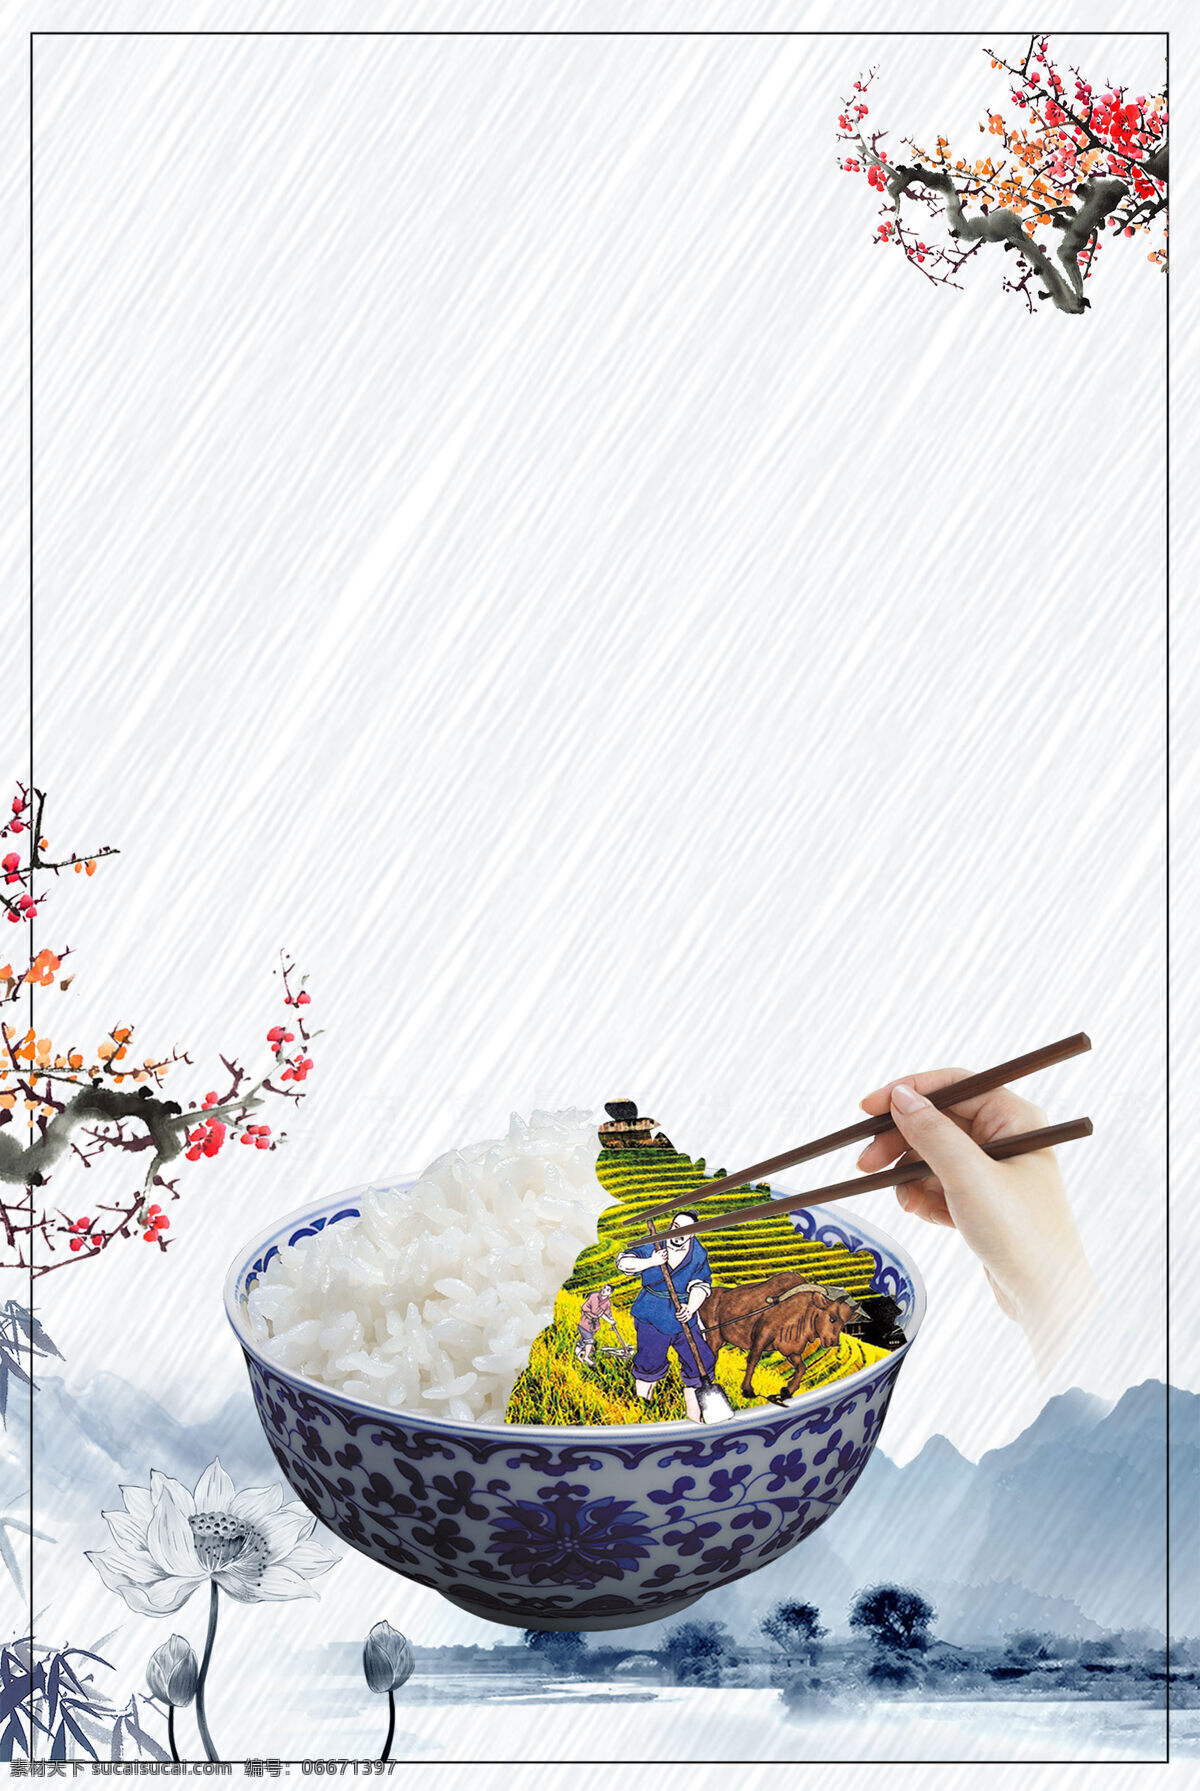 水墨 中国 米饭 背景 中国风 水墨画 山水 纹理 蔬菜 广告